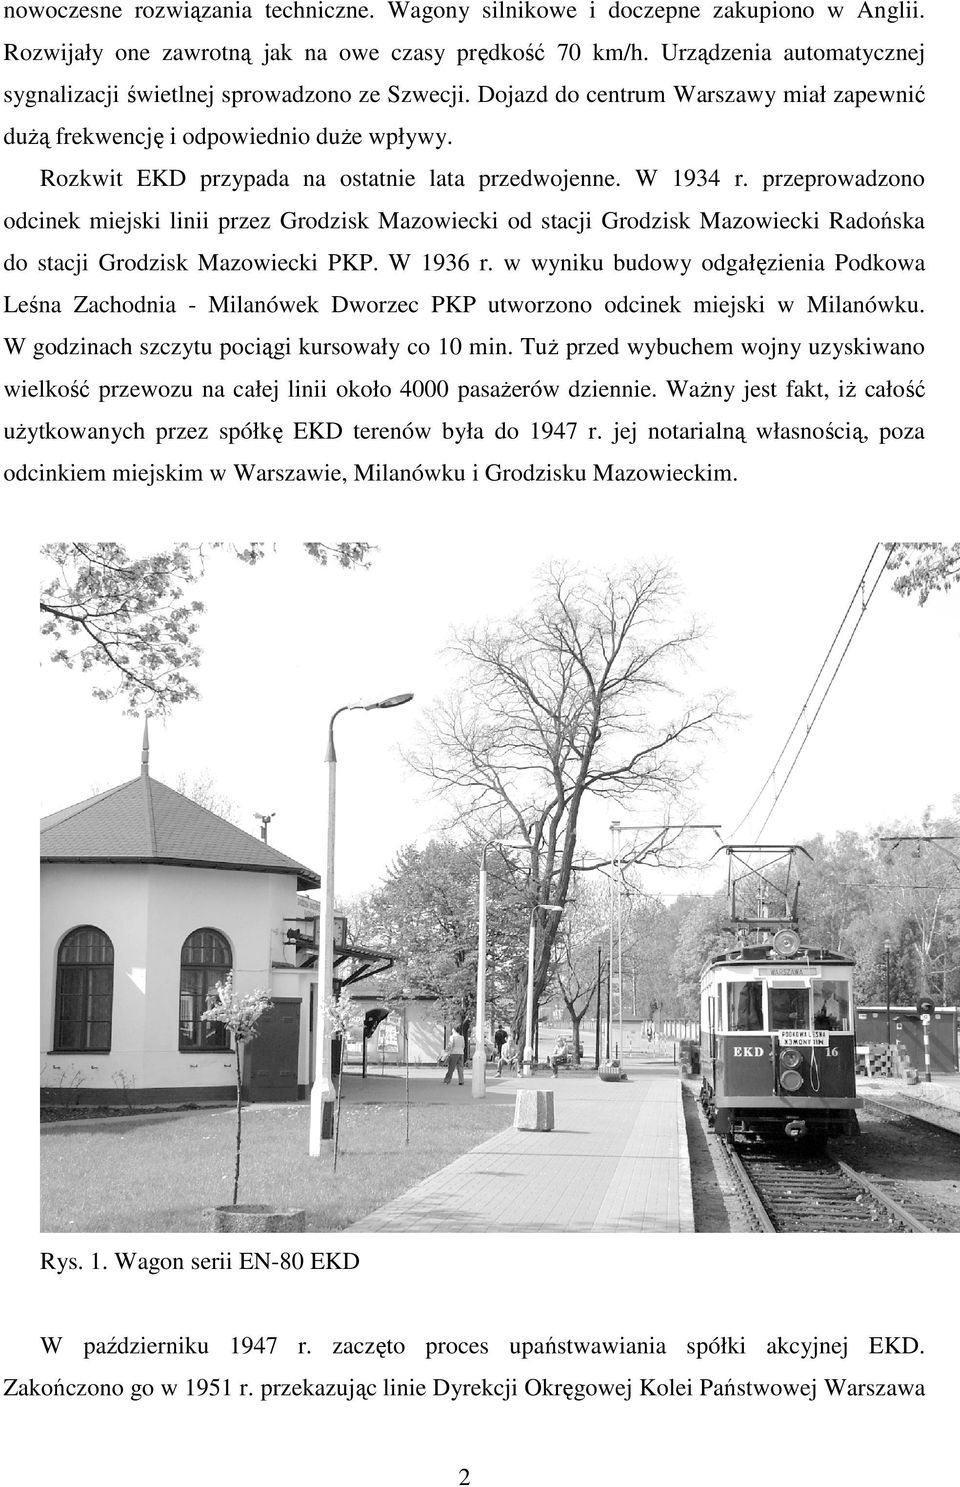 Rozkwit EKD przypada na ostatnie lata przedwojenne. W 1934 r. przeprowadzono odcinek miejski linii przez Grodzisk Mazowiecki od stacji Grodzisk Mazowiecki Radońska do stacji Grodzisk Mazowiecki PKP.